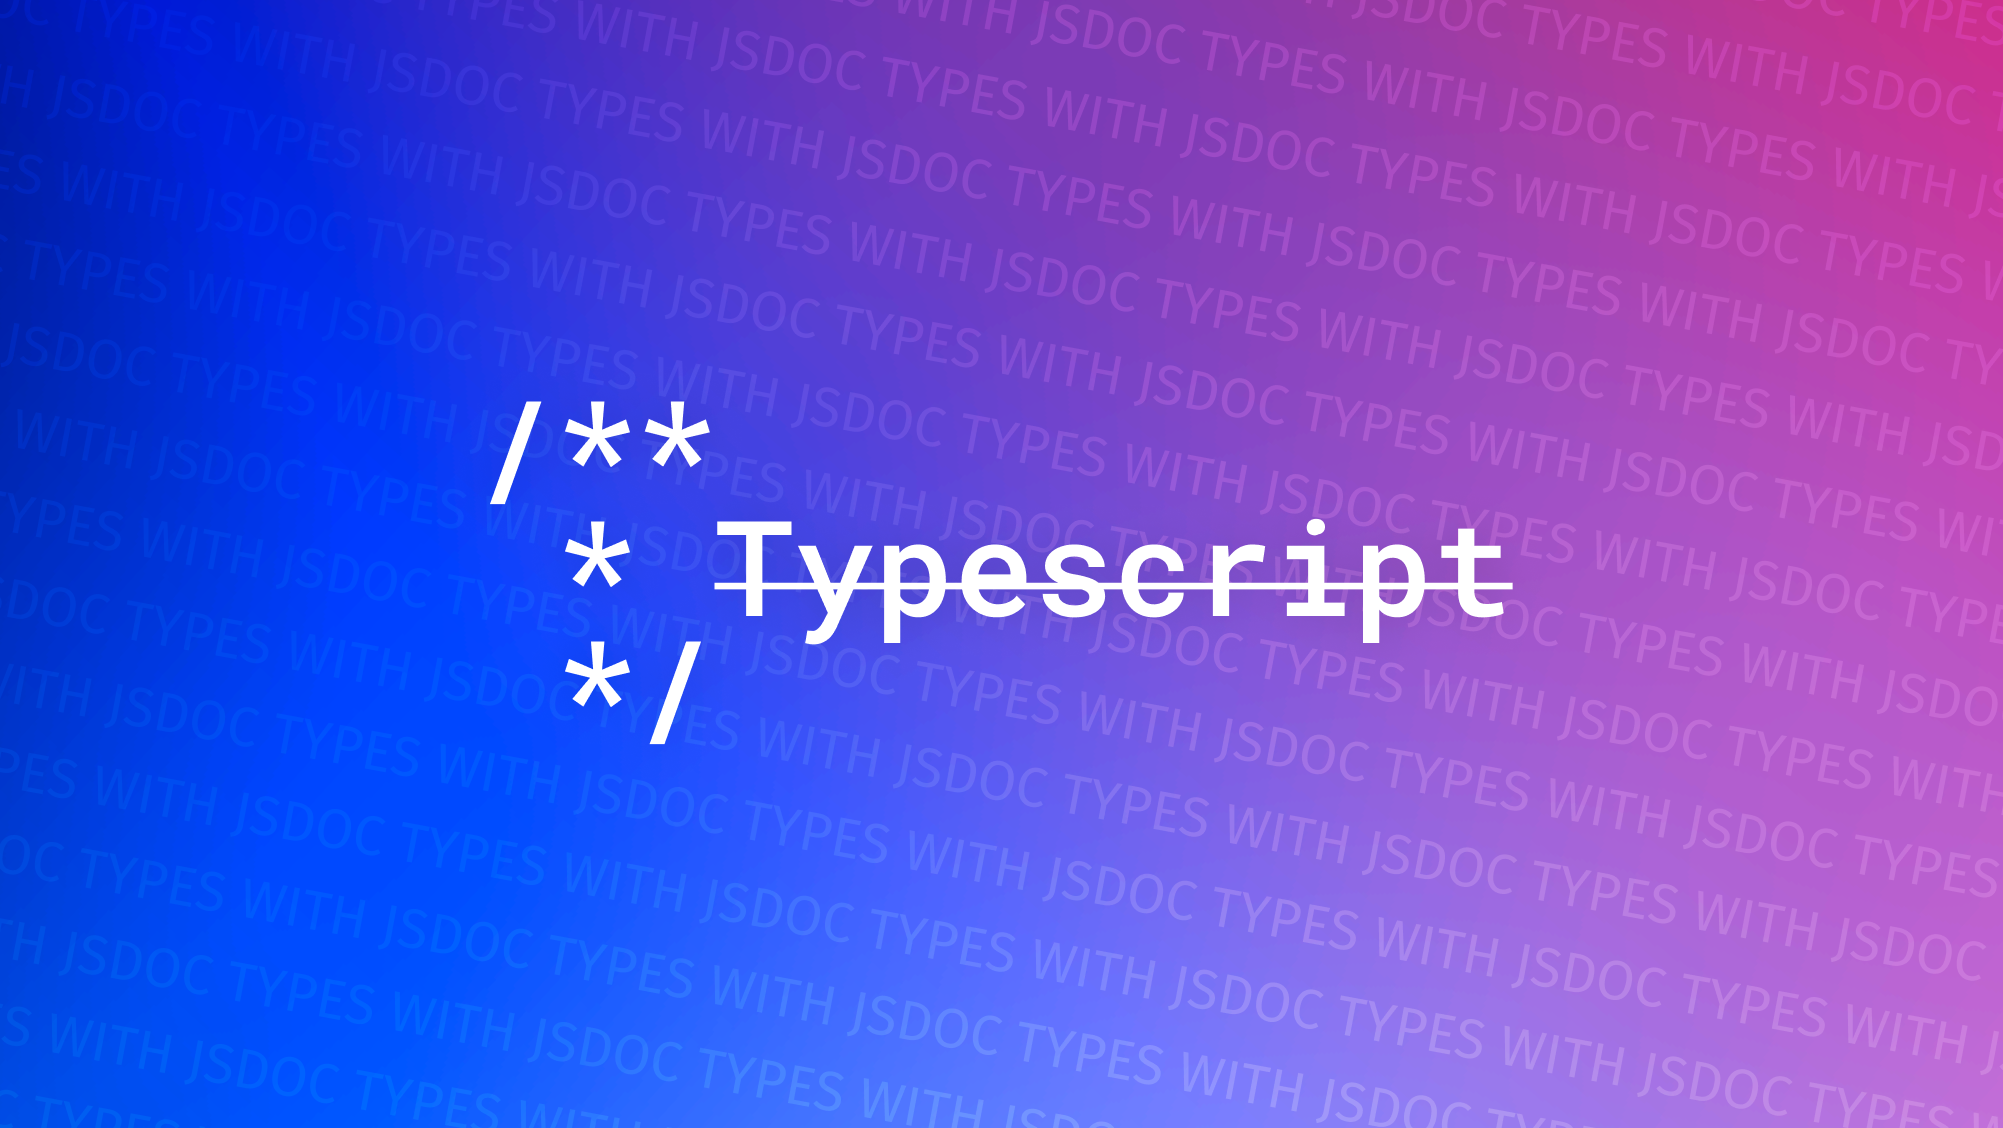 有JSDoc还需要TypeScript吗